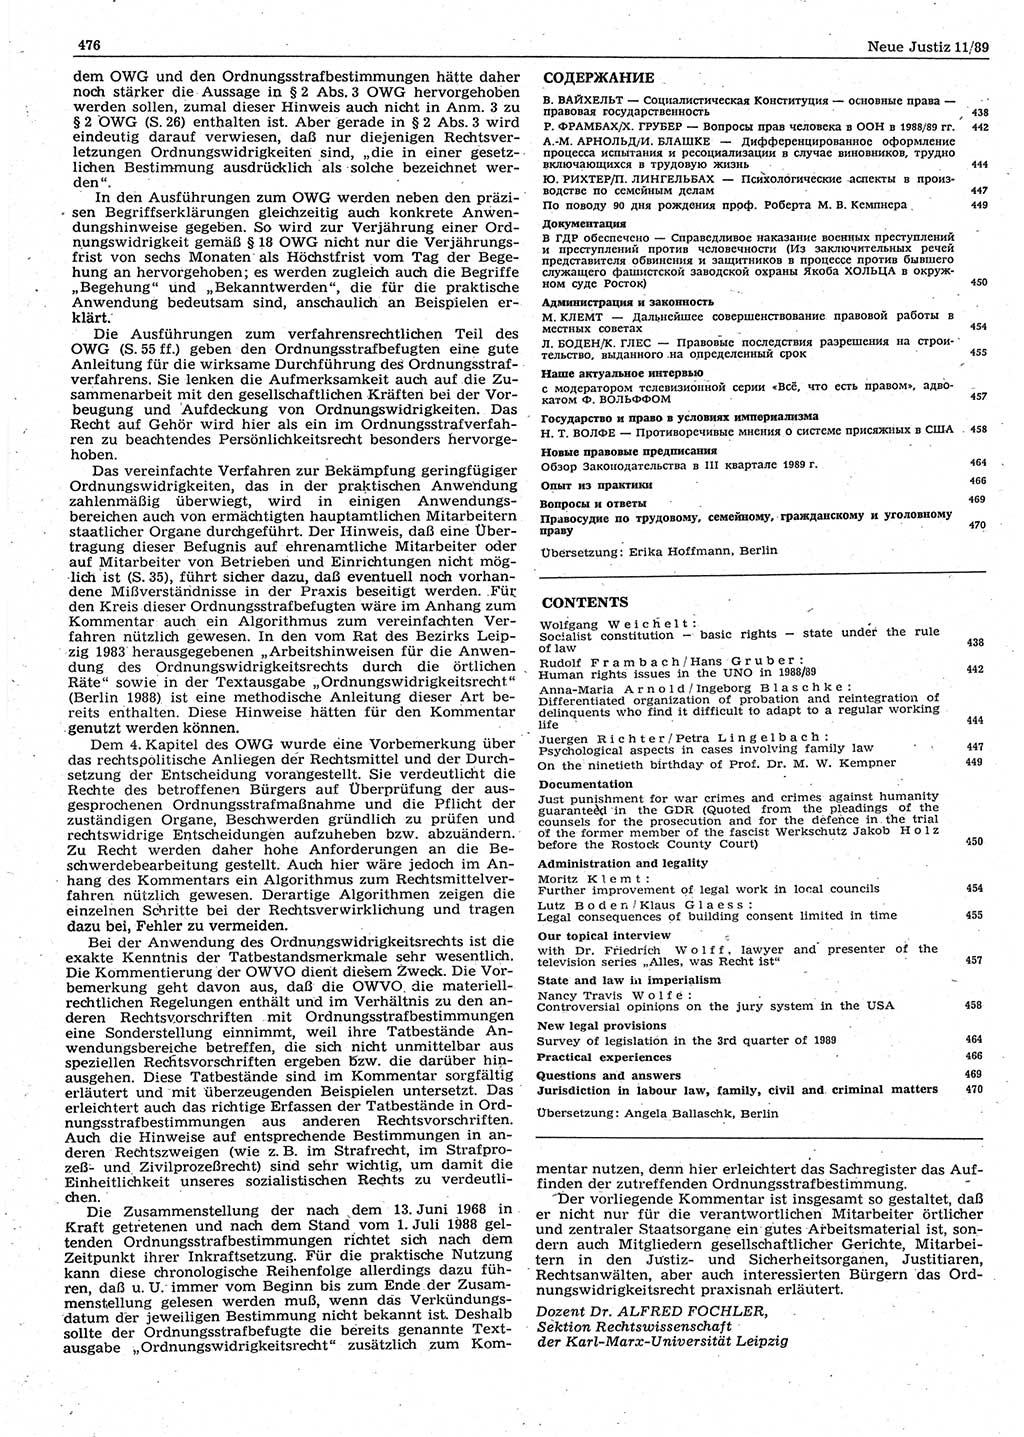 Neue Justiz (NJ), Zeitschrift für sozialistisches Recht und Gesetzlichkeit [Deutsche Demokratische Republik (DDR)], 43. Jahrgang 1989, Seite 476 (NJ DDR 1989, S. 476)